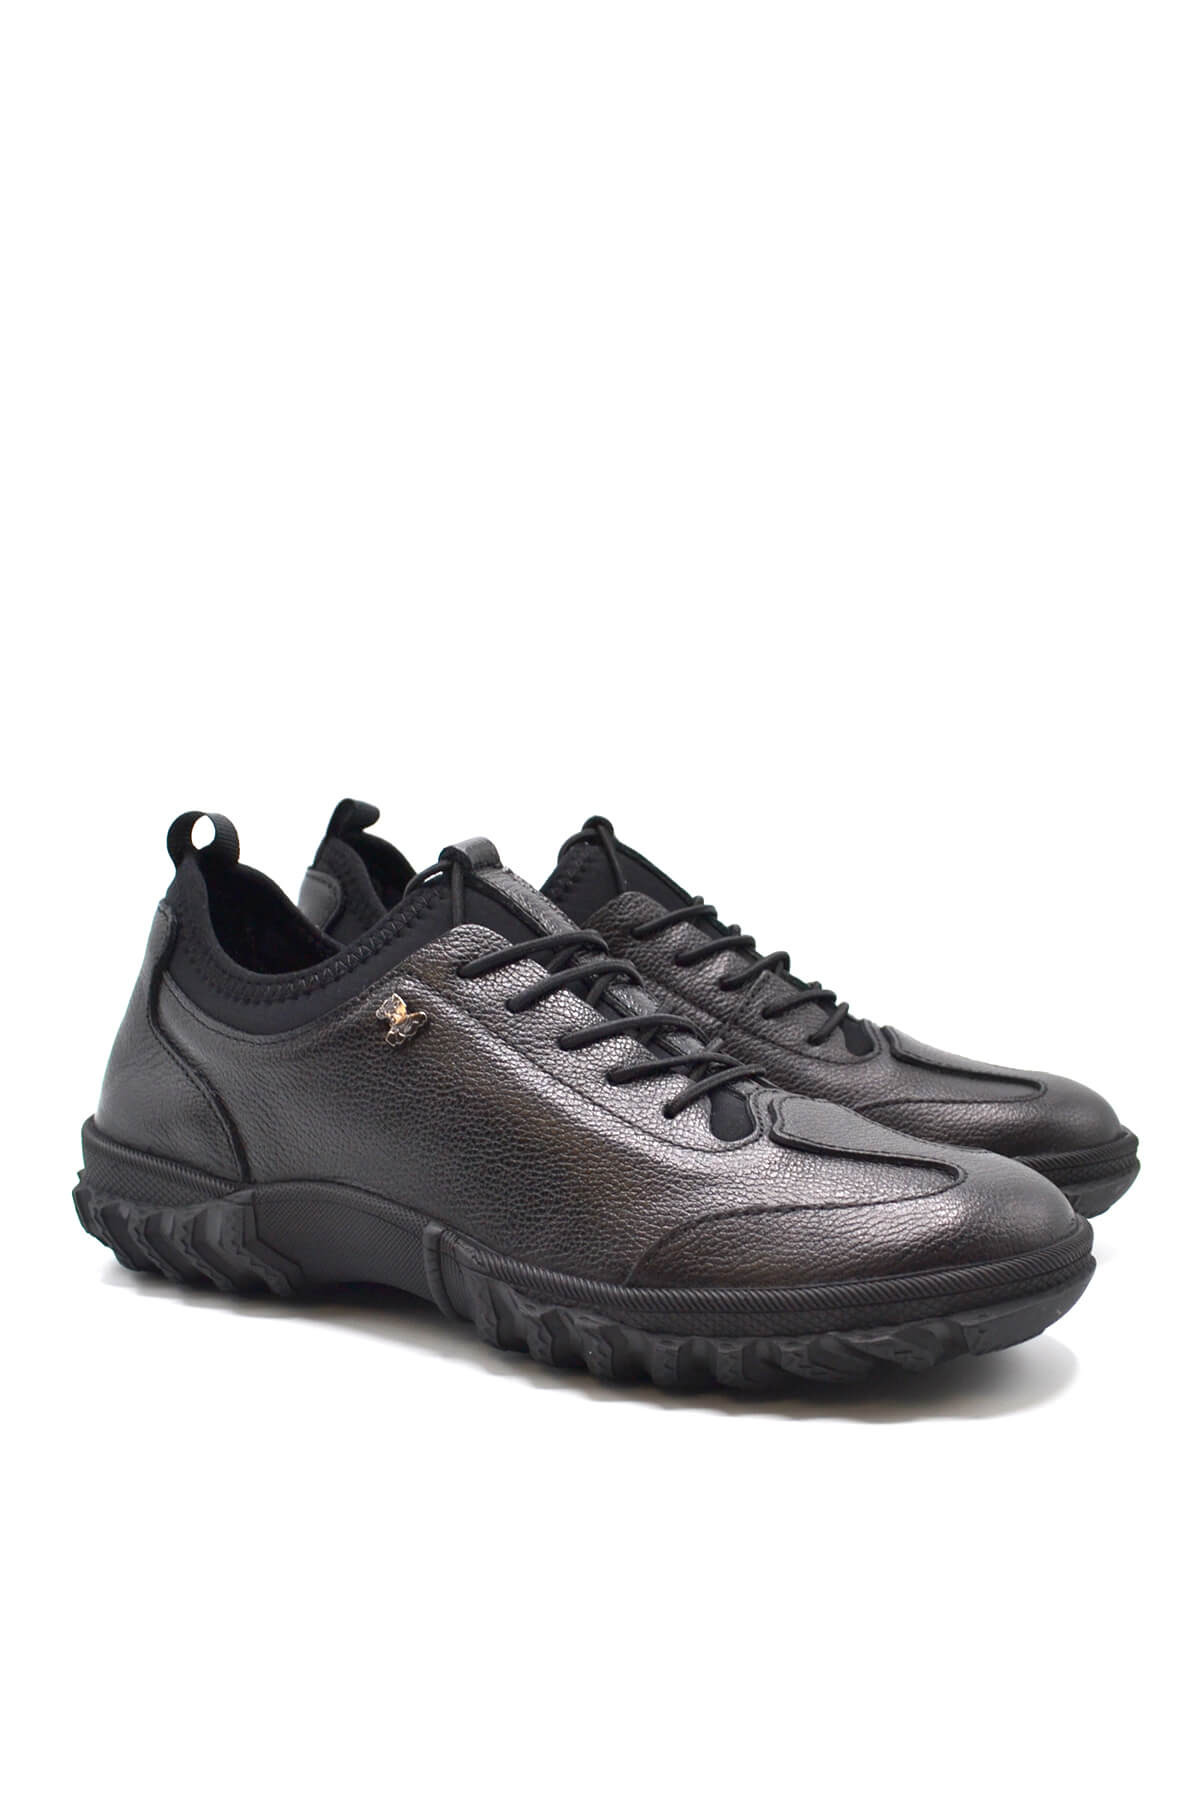 Kadın Comfort Deri Ayakkabı Siyah 2255201K - Thumbnail